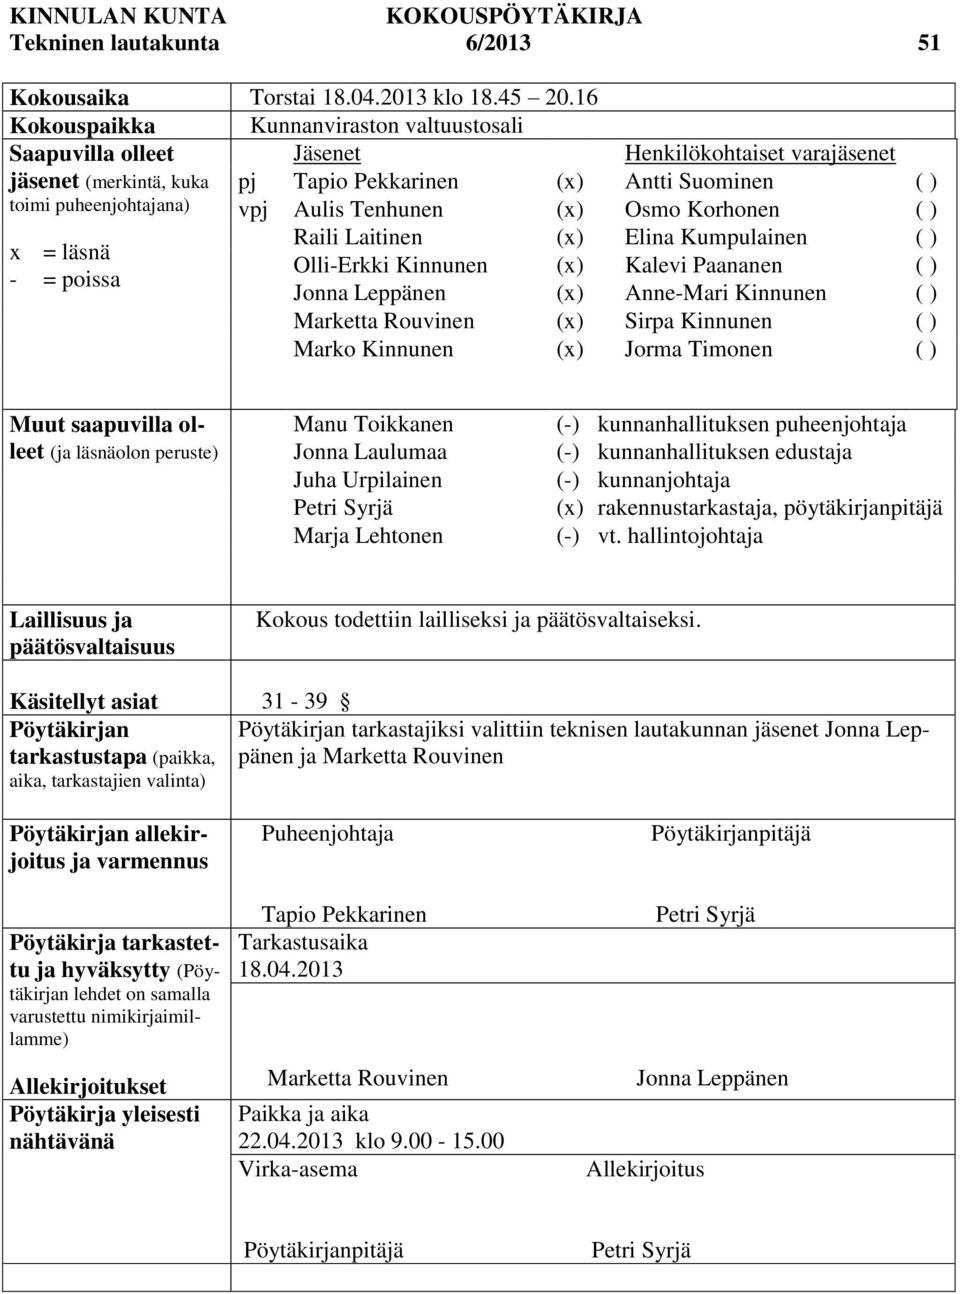 Suominen ( ) vpj Aulis Tenhunen (x) Osmo Korhonen ( ) Raili Laitinen (x) Elina Kumpulainen ( ) Olli-Erkki Kinnunen (x) Kalevi Paananen ( ) Jonna Leppänen (x) Anne-Mari Kinnunen ( ) Marketta Rouvinen